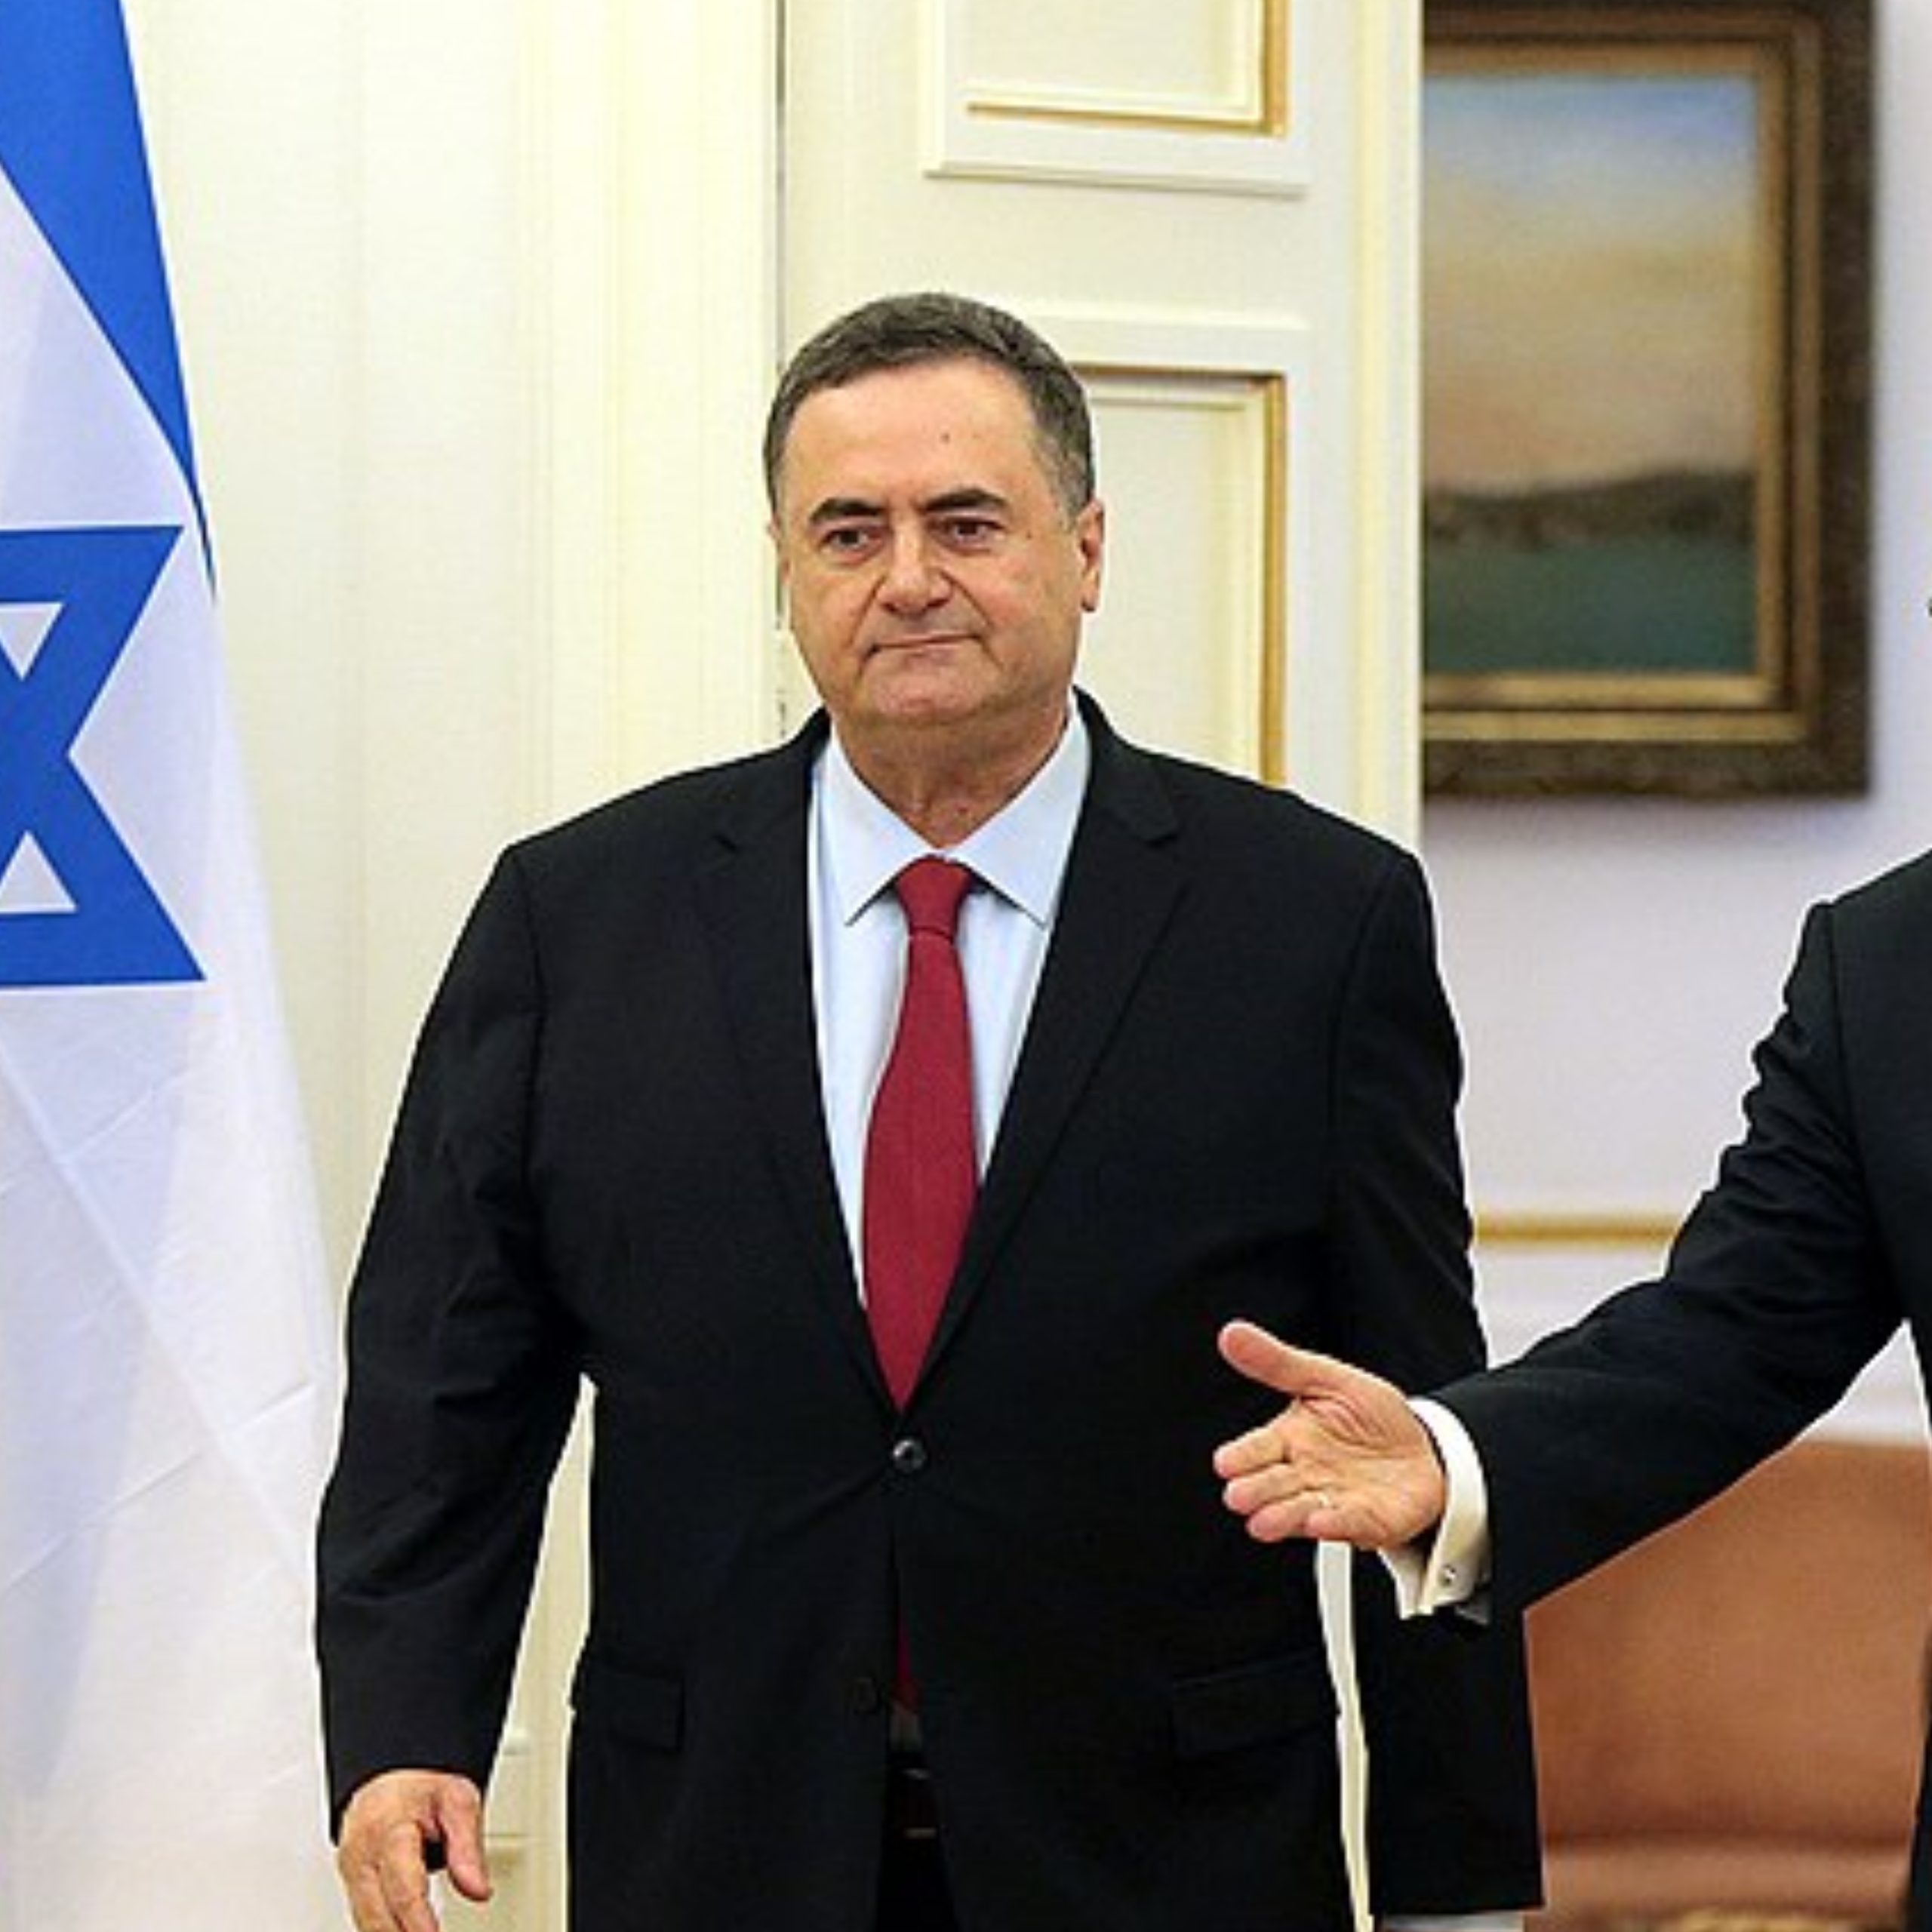 Ministro das Relações Exteriores de Israel, Israel Katz exigiu pedido de desculpas do governo brasileiro